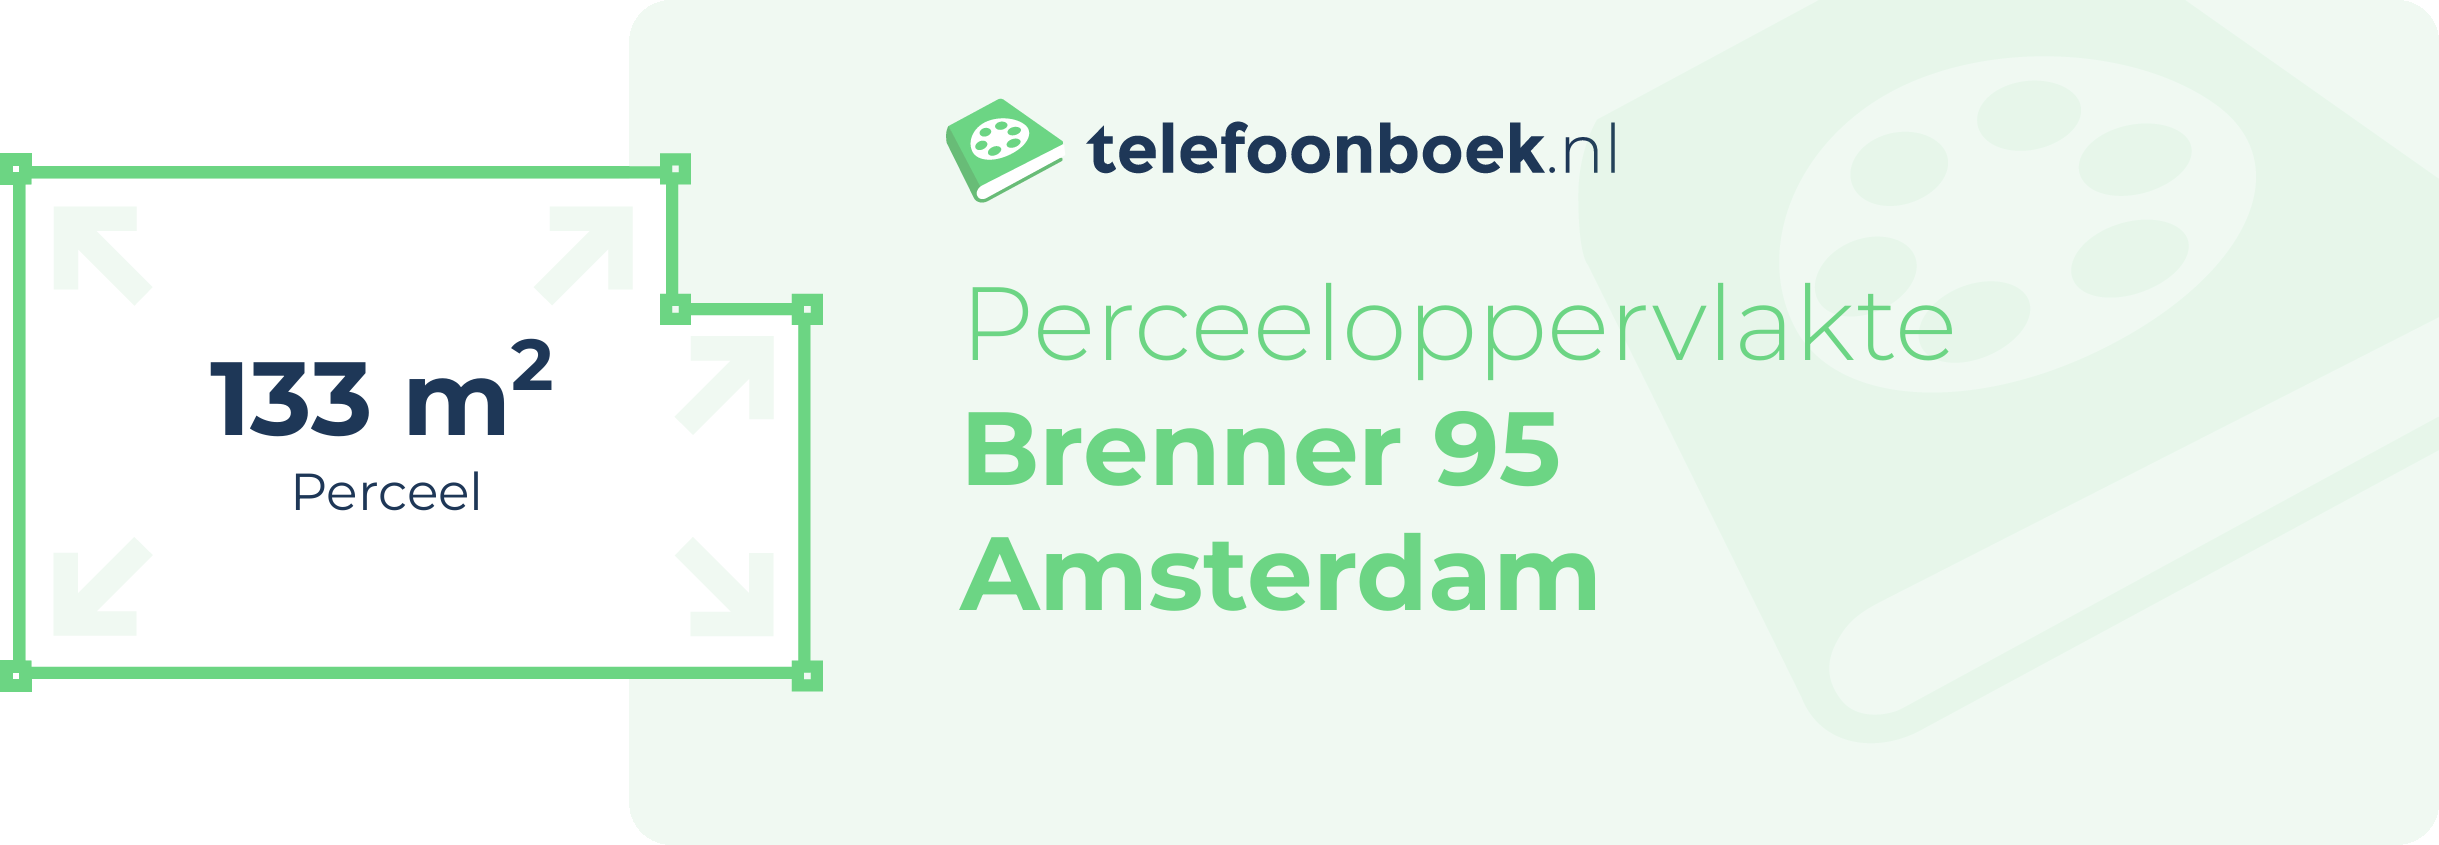 Perceeloppervlakte Brenner 95 Amsterdam